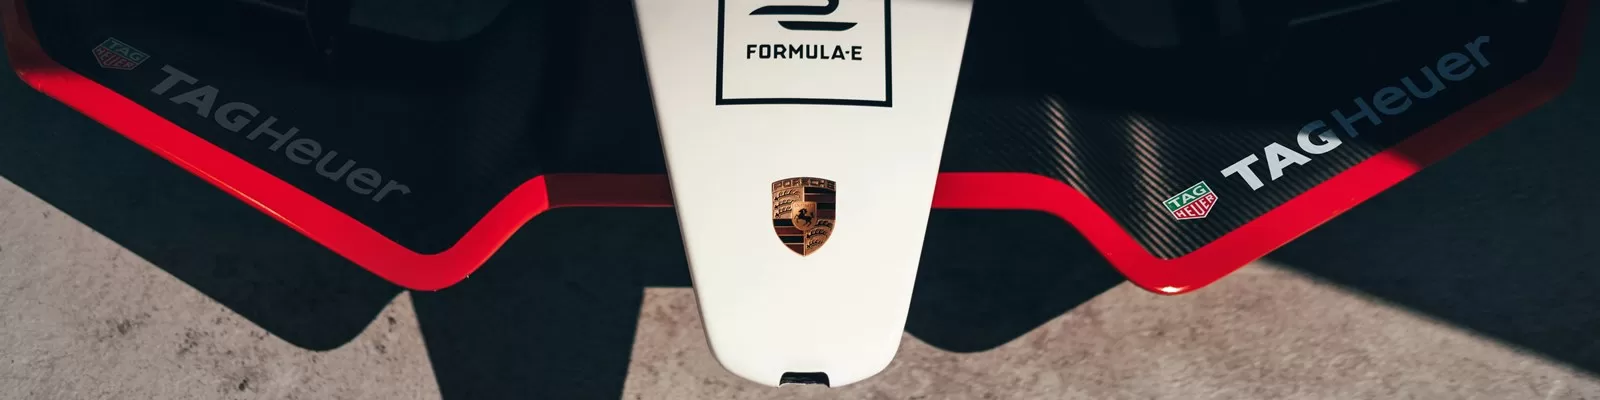 Подкаст Inside E: приостановка сезона Formula E 2019/2020 и оценка текущих результатов 